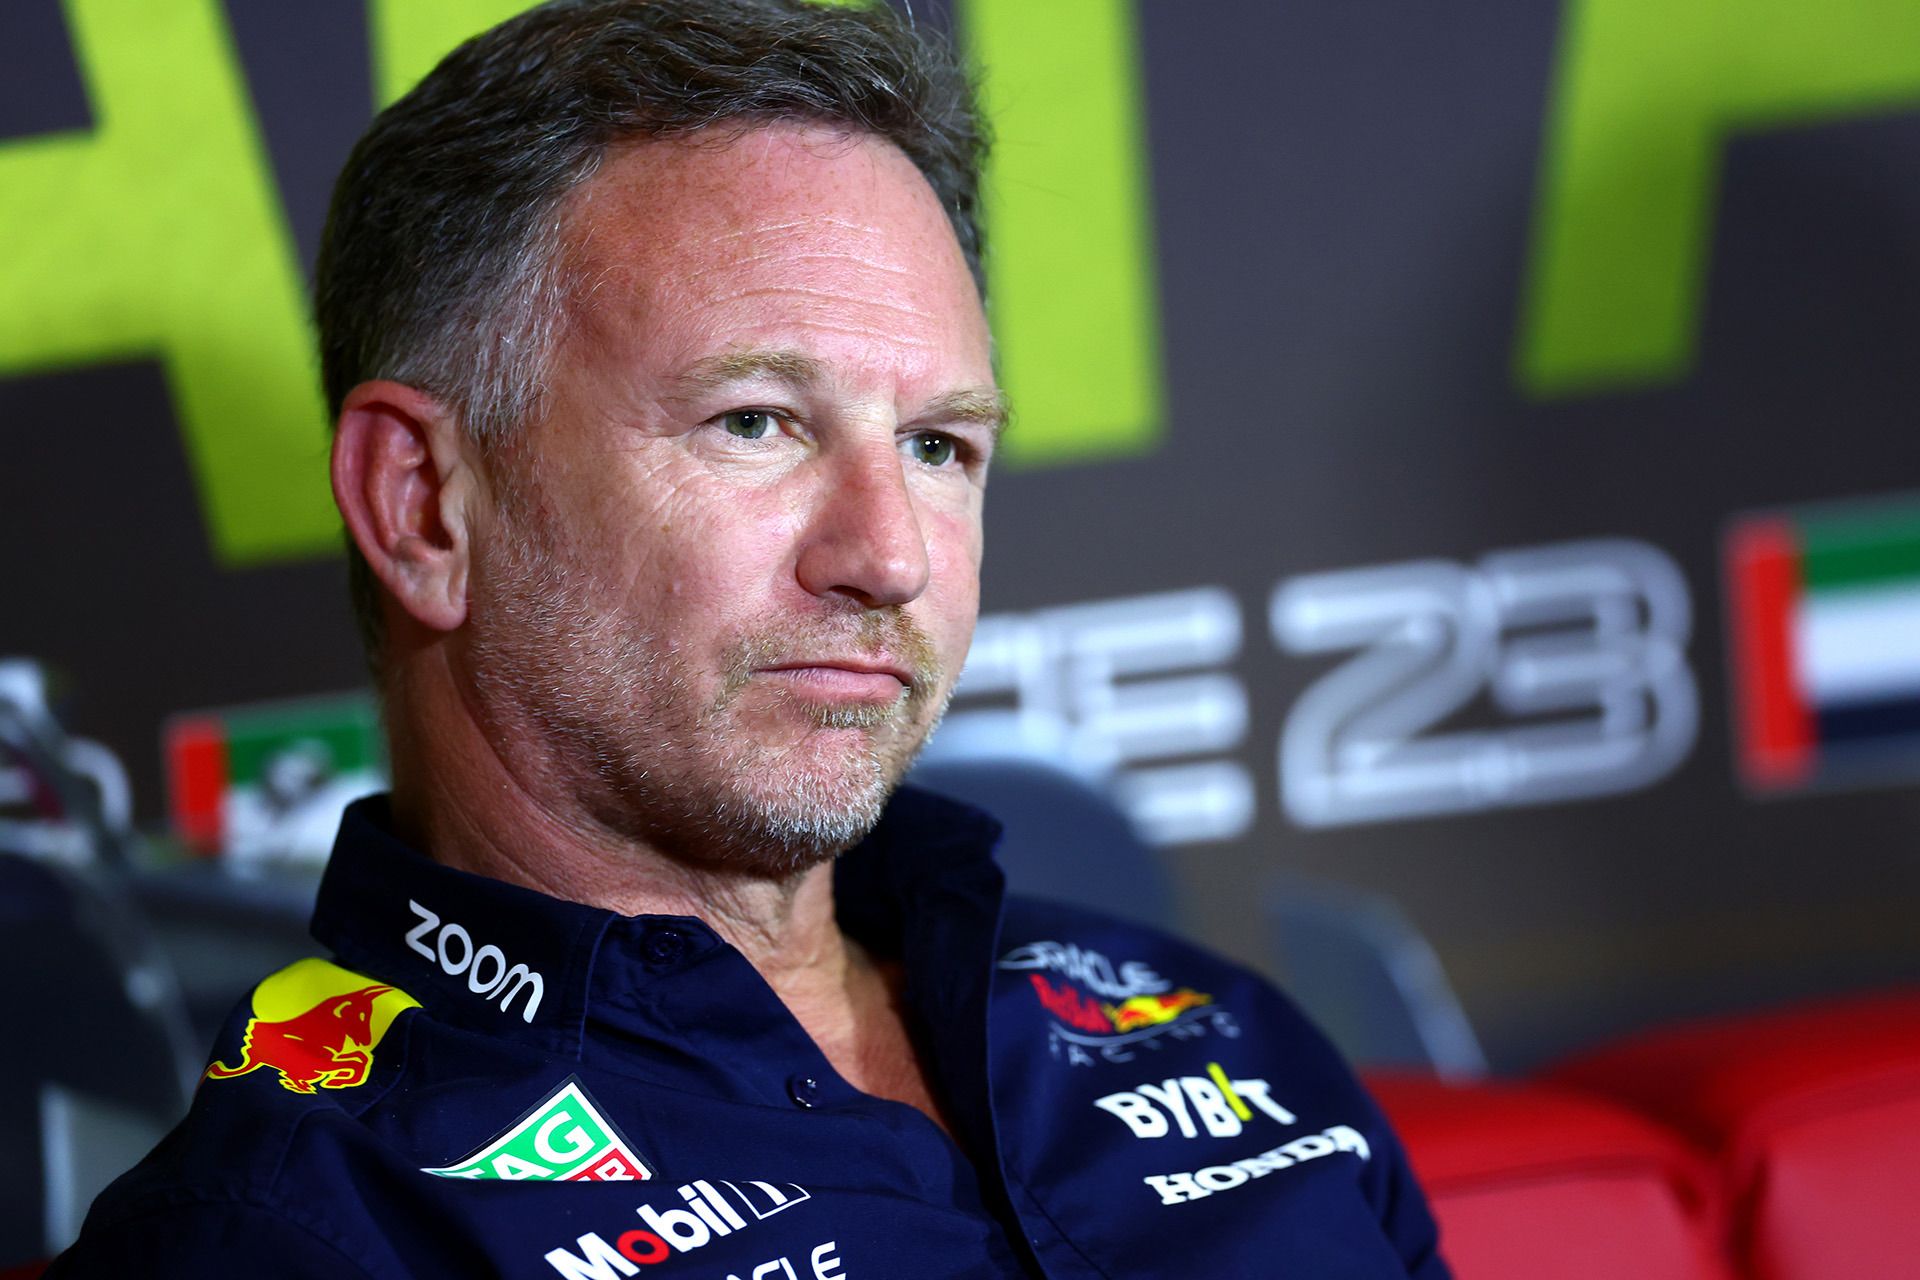 Former F1 team owner Eddie Jordan rips 'absurd' Red Bull investigation into Christian Horner